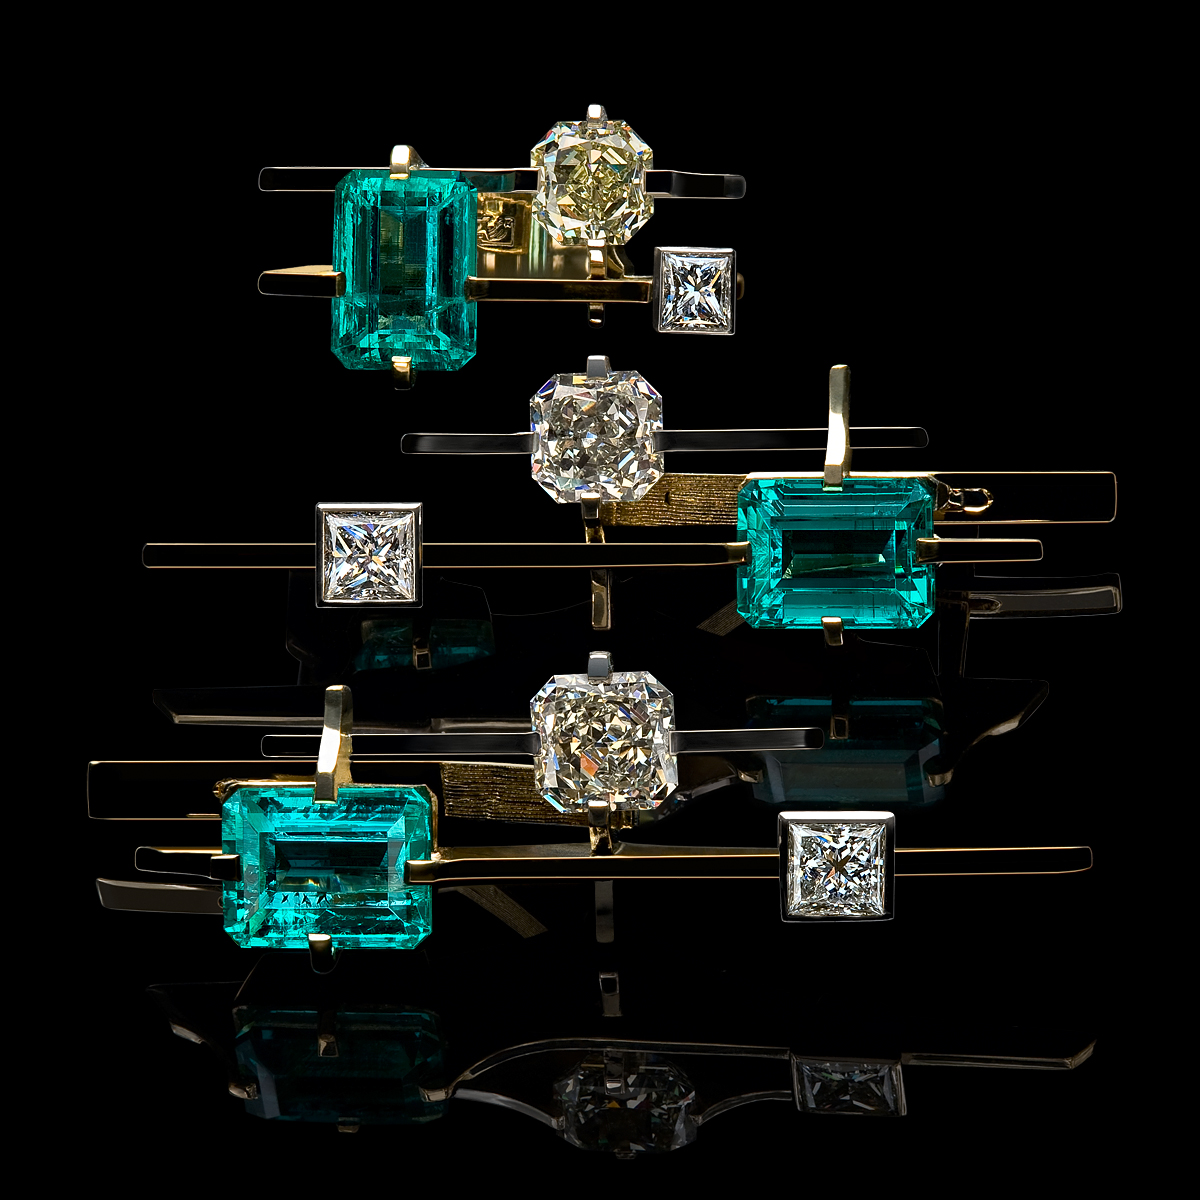 Jewelry Photography. Diamond Jewelry. Royal Gems